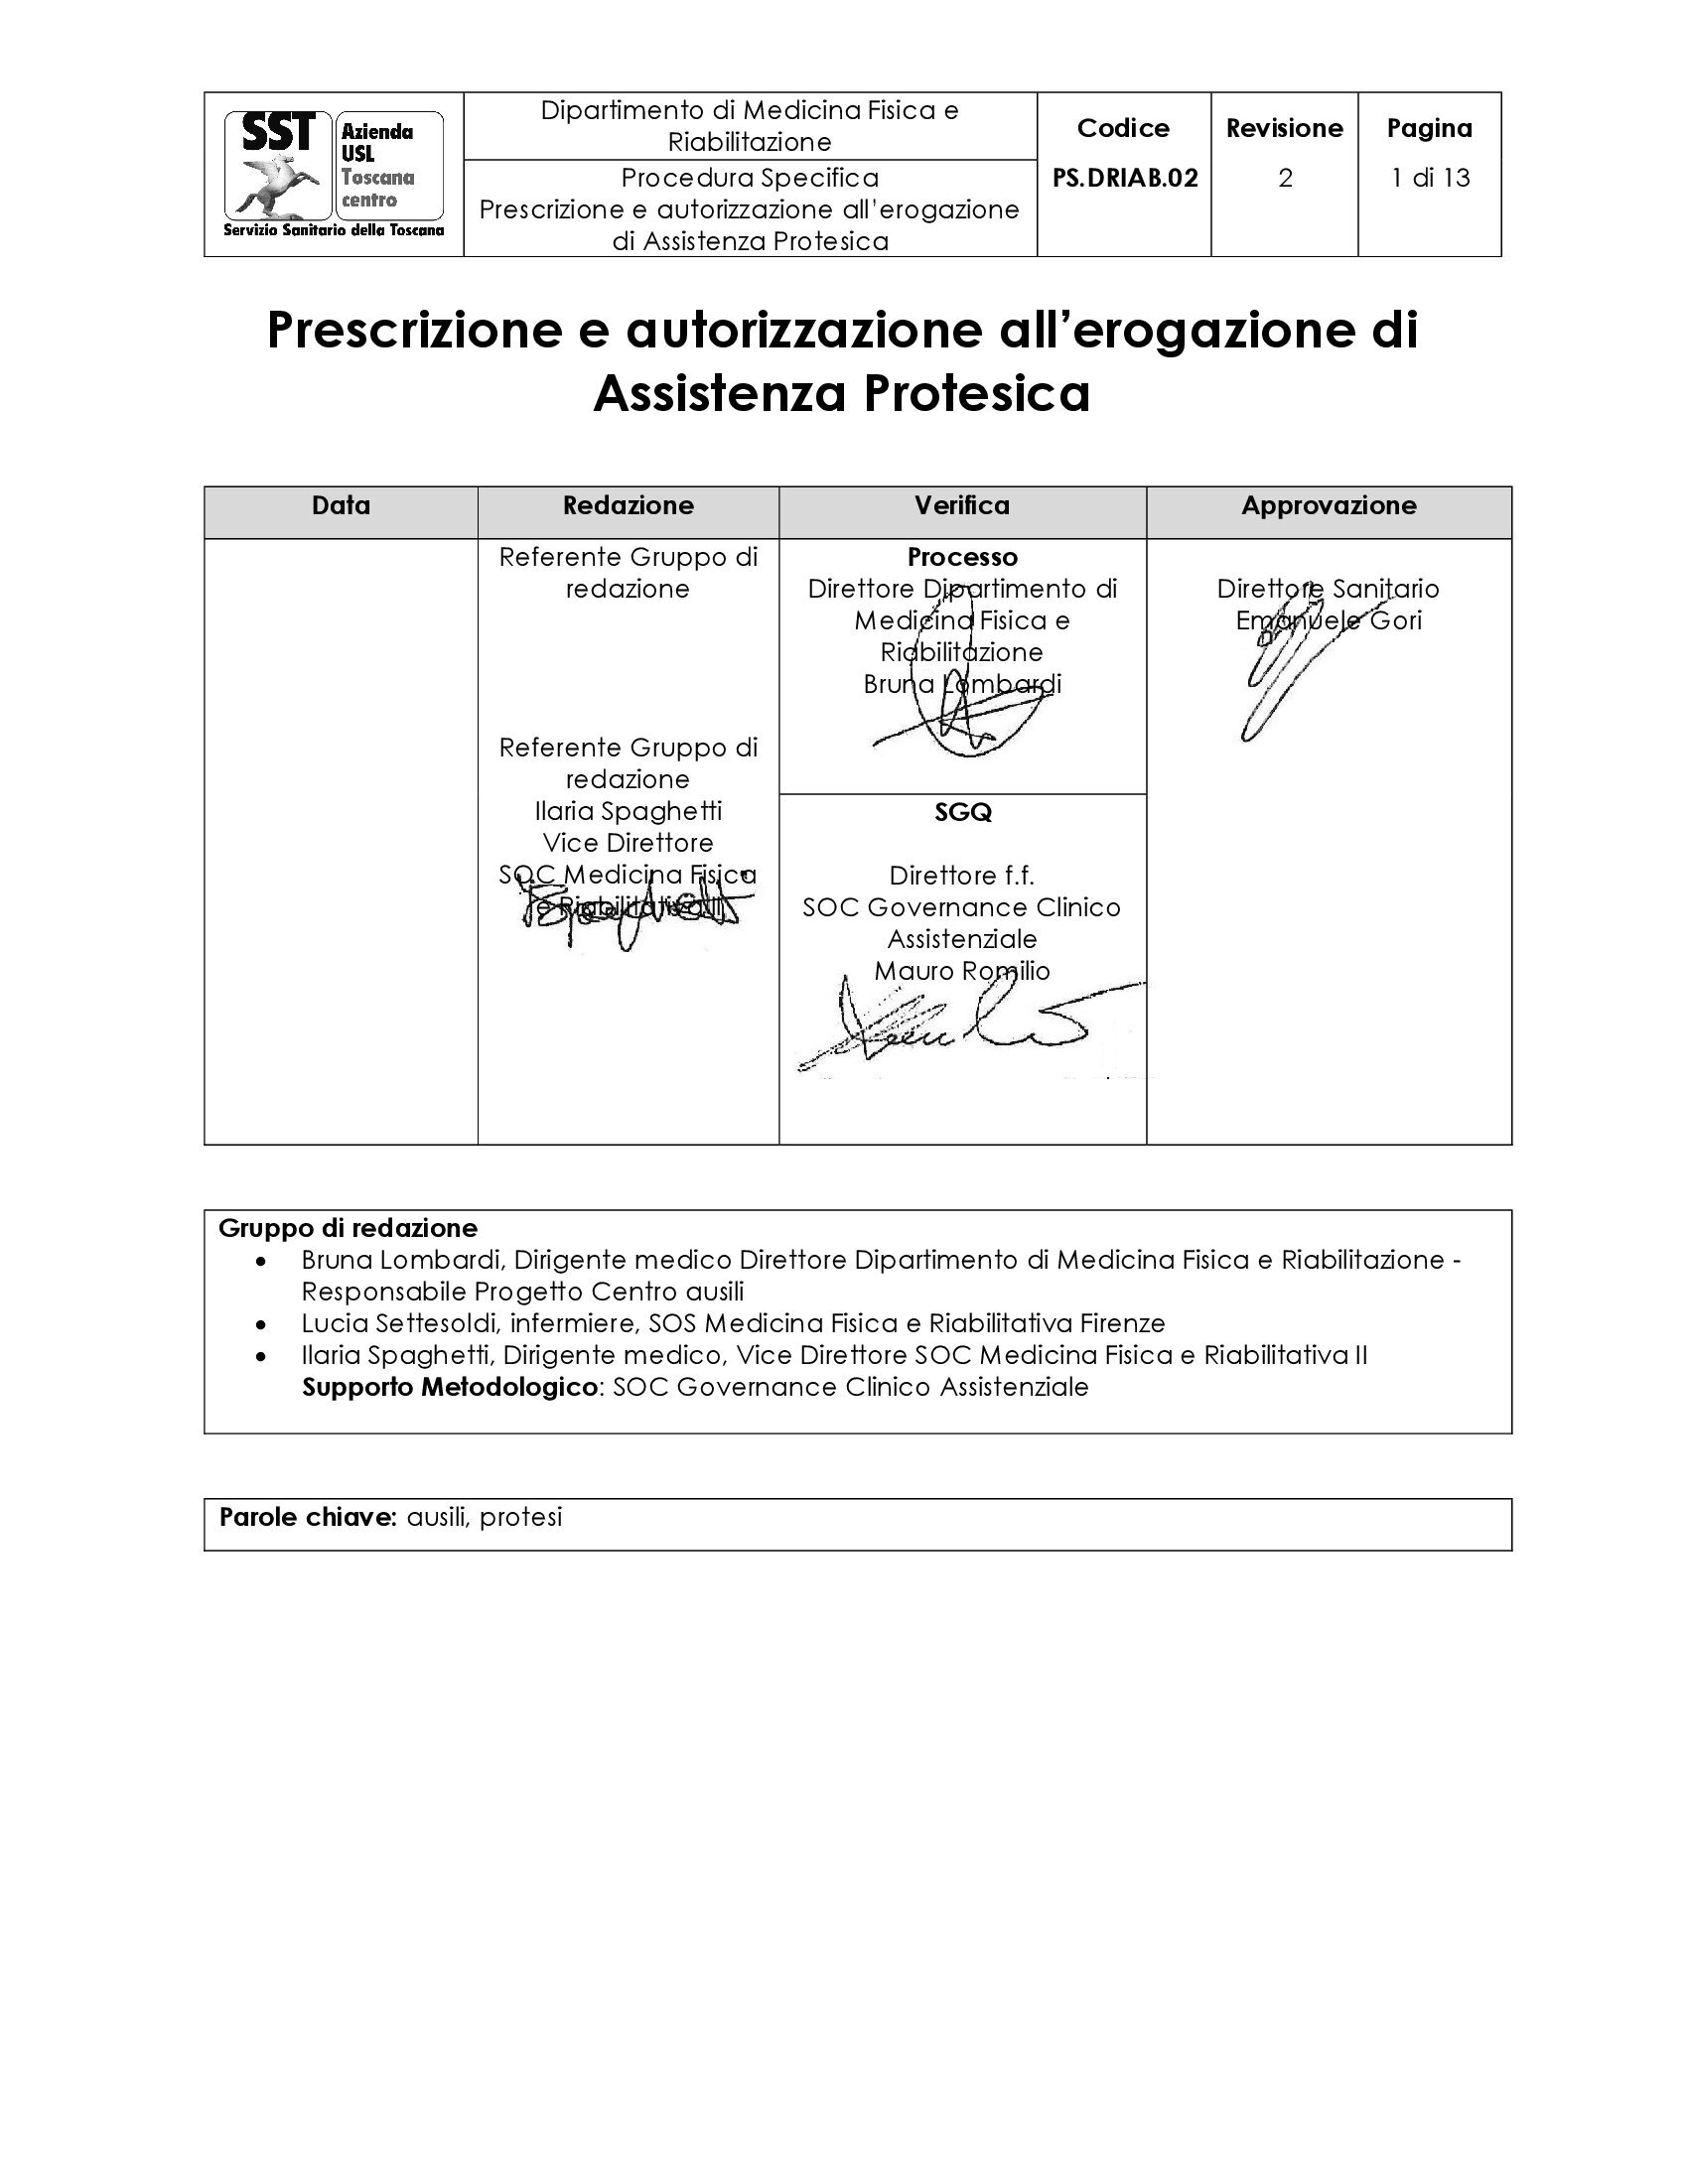 PS.DRIAB.02 rev.2 Prescrizione e autorizzazione all'erogazione di Assistenza Protesica